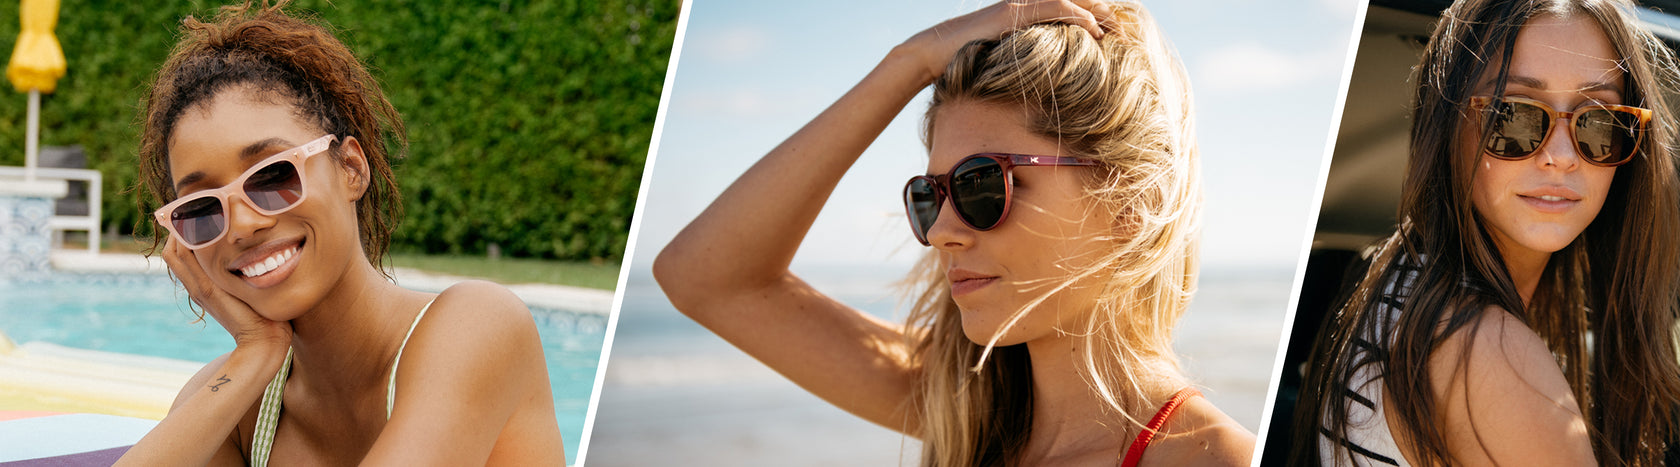 Fashion Design Unique Small Square Sunglasses Men's Women Outdoor Shades  Glasses